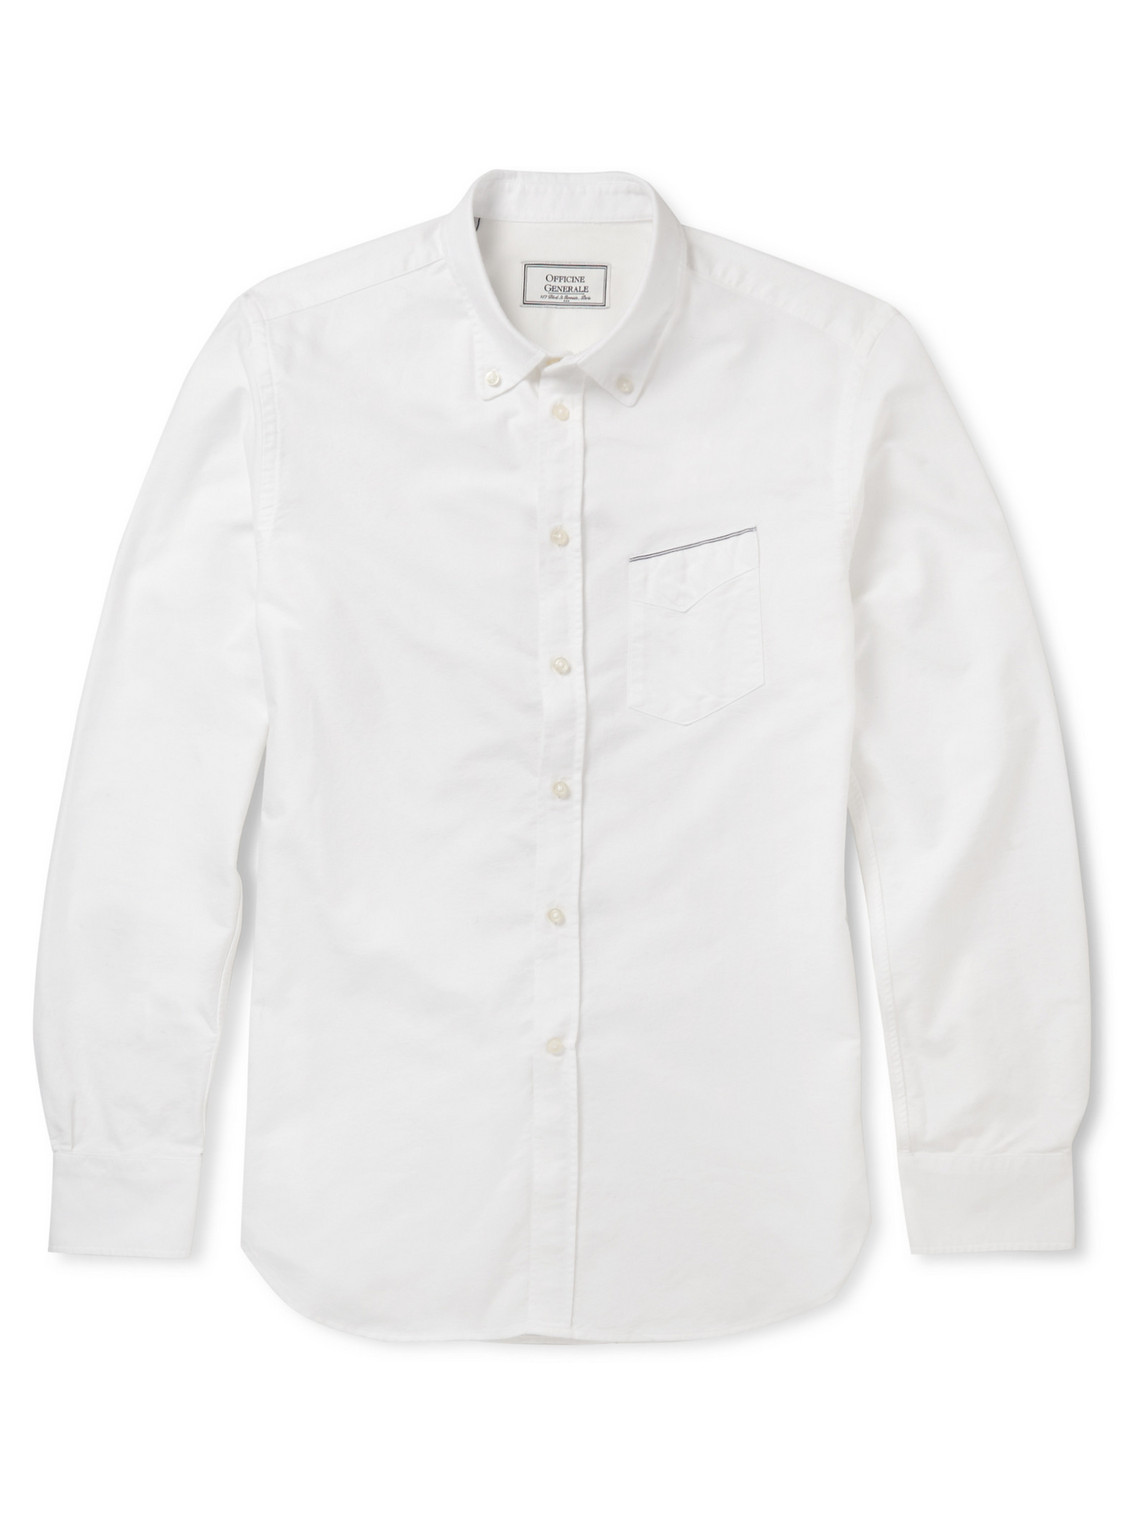 Officine Générale Cotton Oxford Shirt